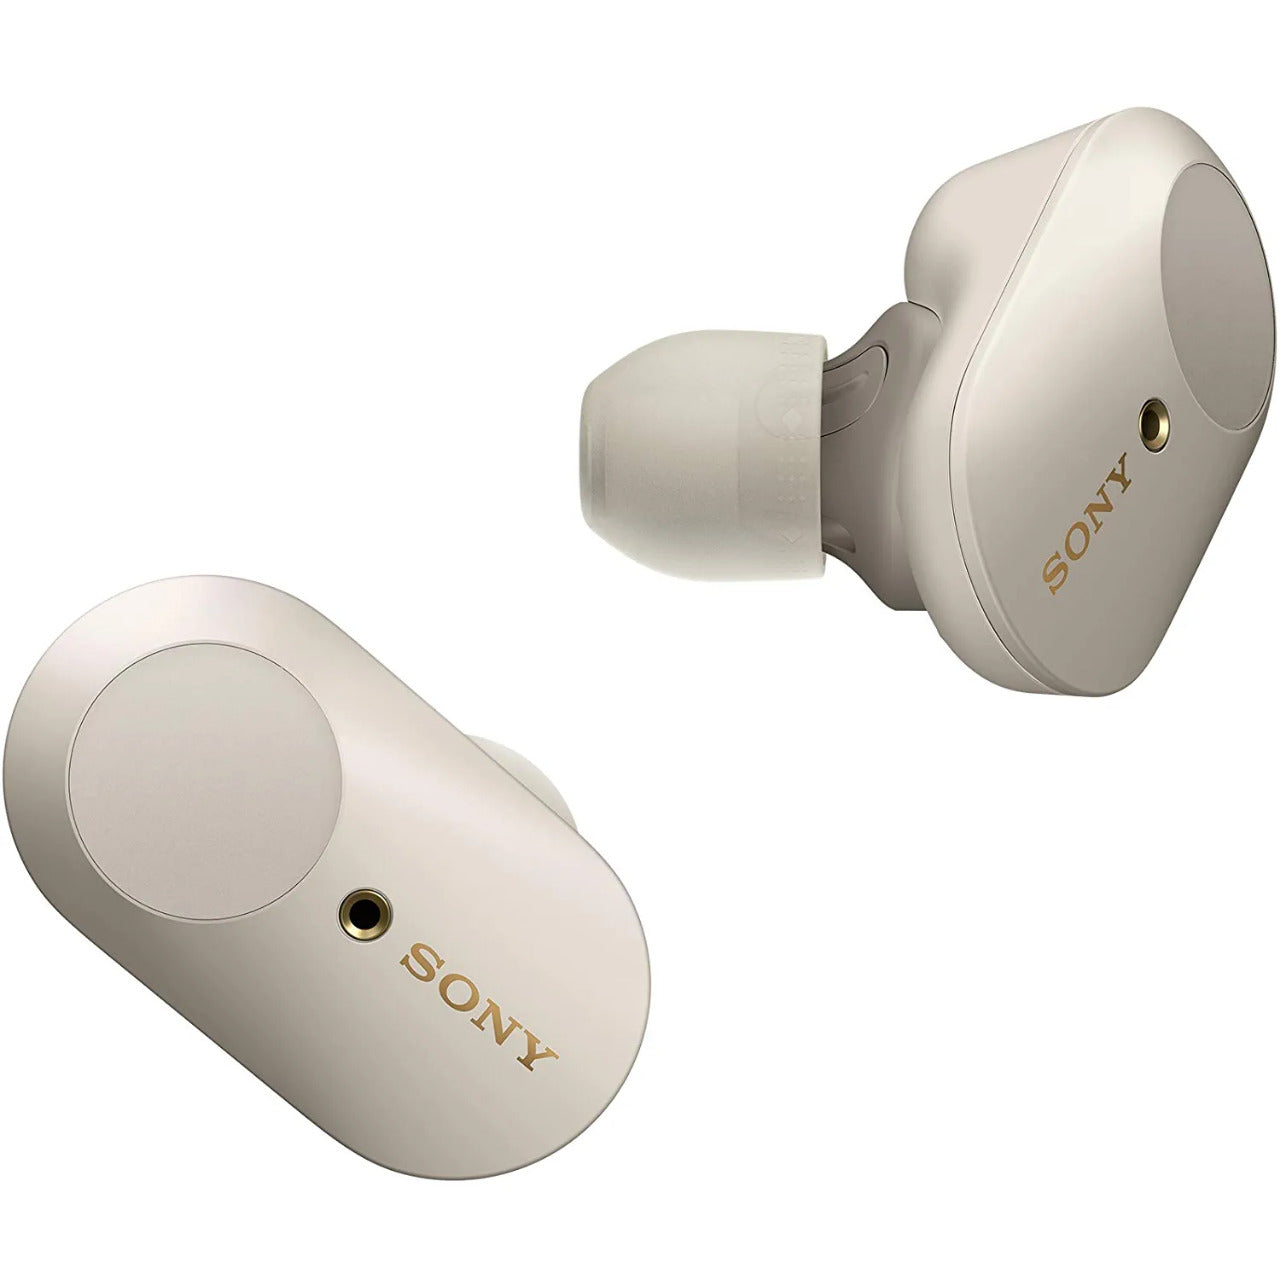 Sony WF-1000XM3 उद्योग में अग्रणी सक्रिय शोर रद्दीकरण TWS